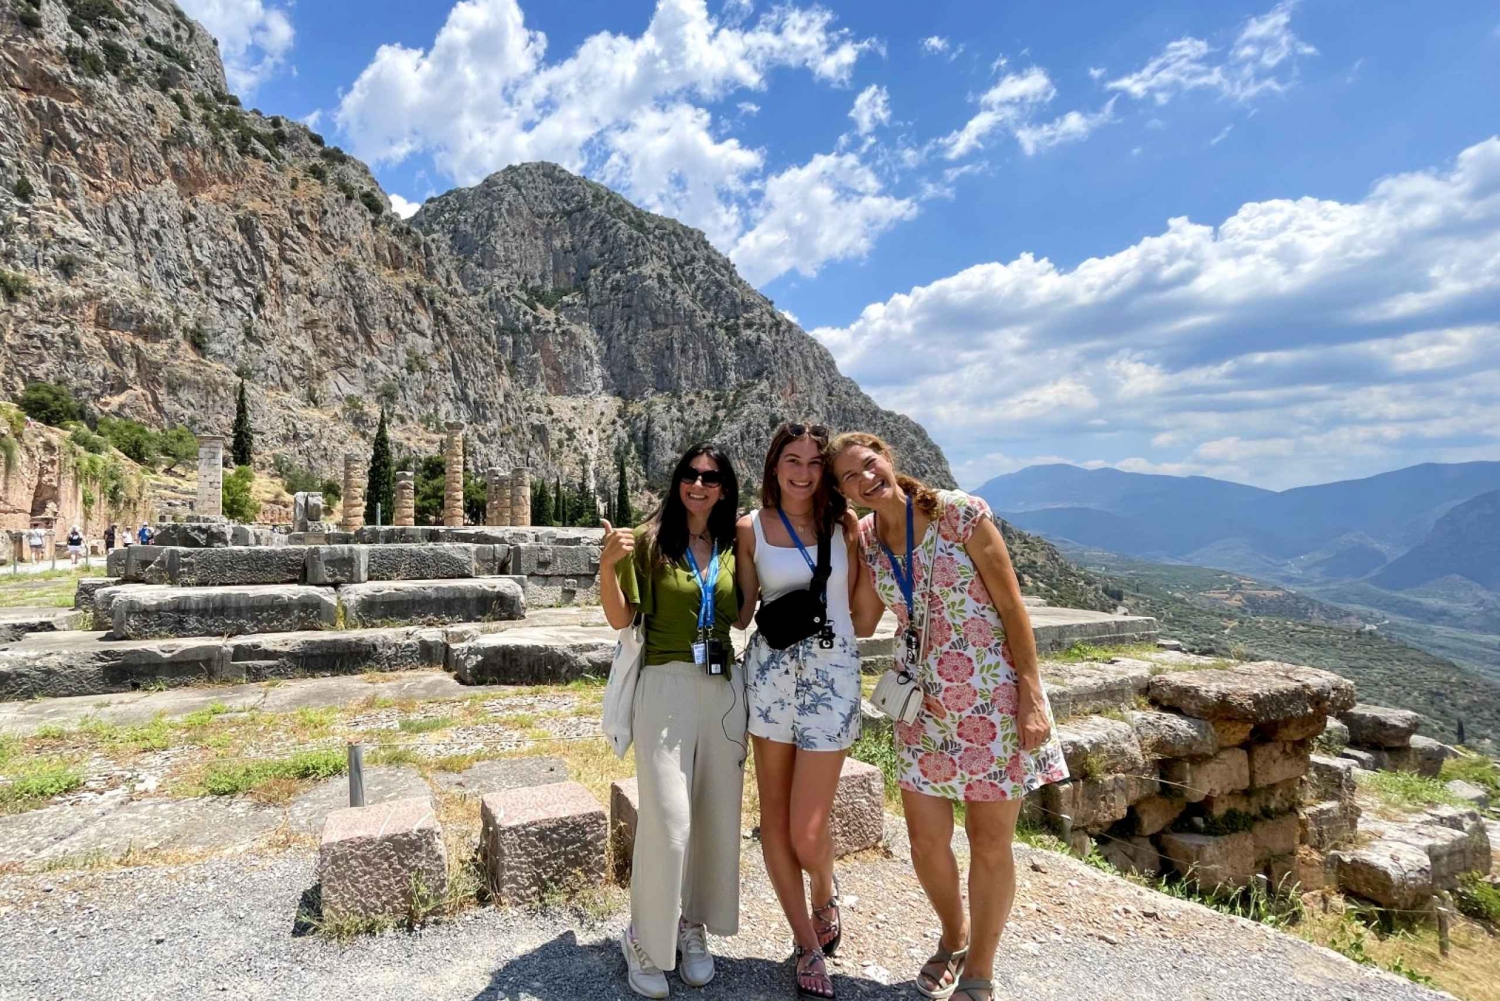 Au départ d'Athènes : Excursion guidée d'une journée au site archéologique de Delphes